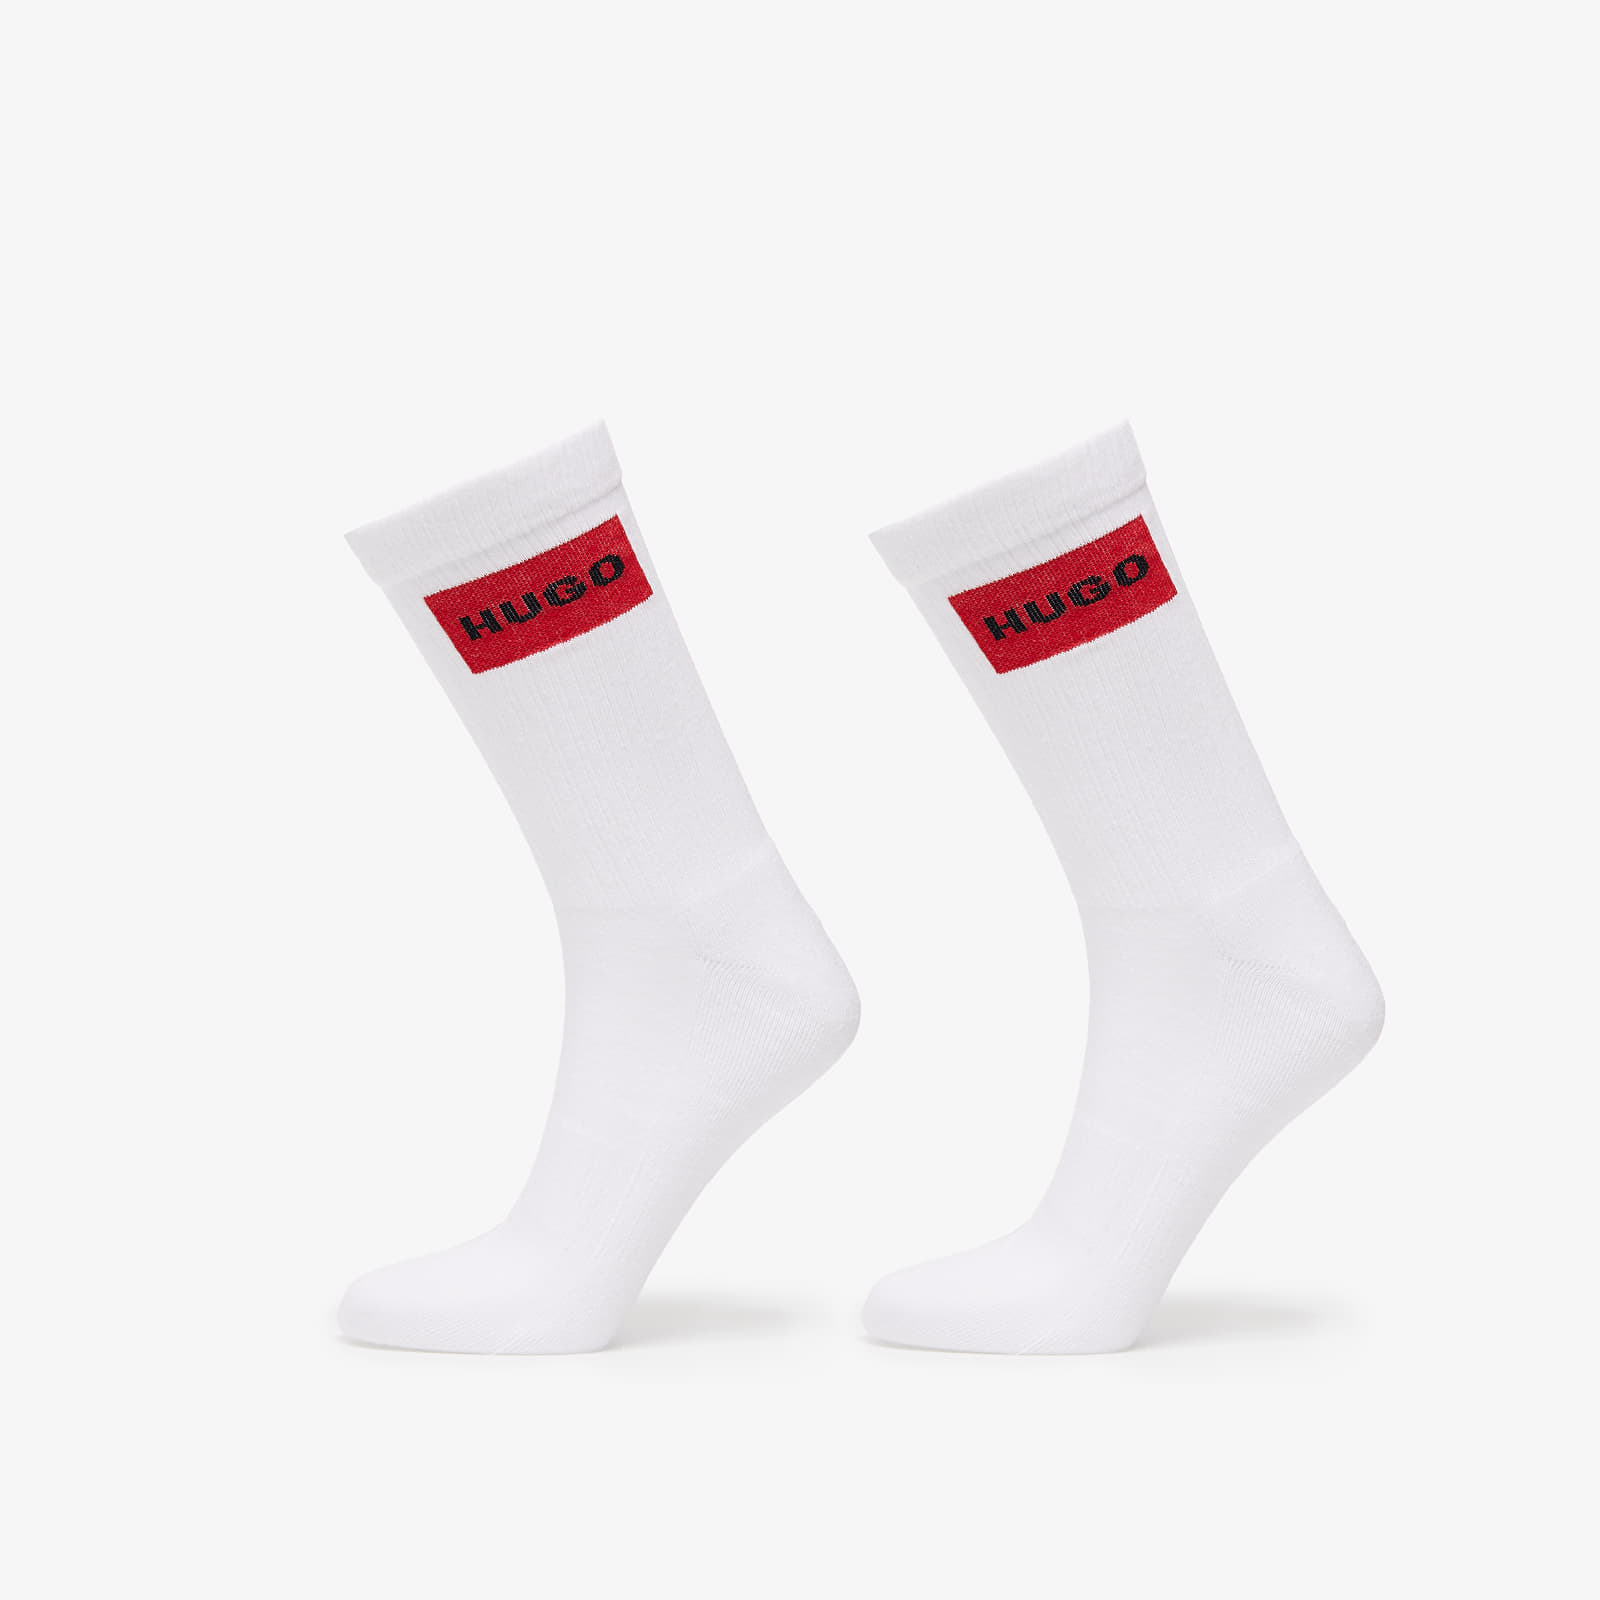 Čarape Hugo Boss 2-Pack Socks White